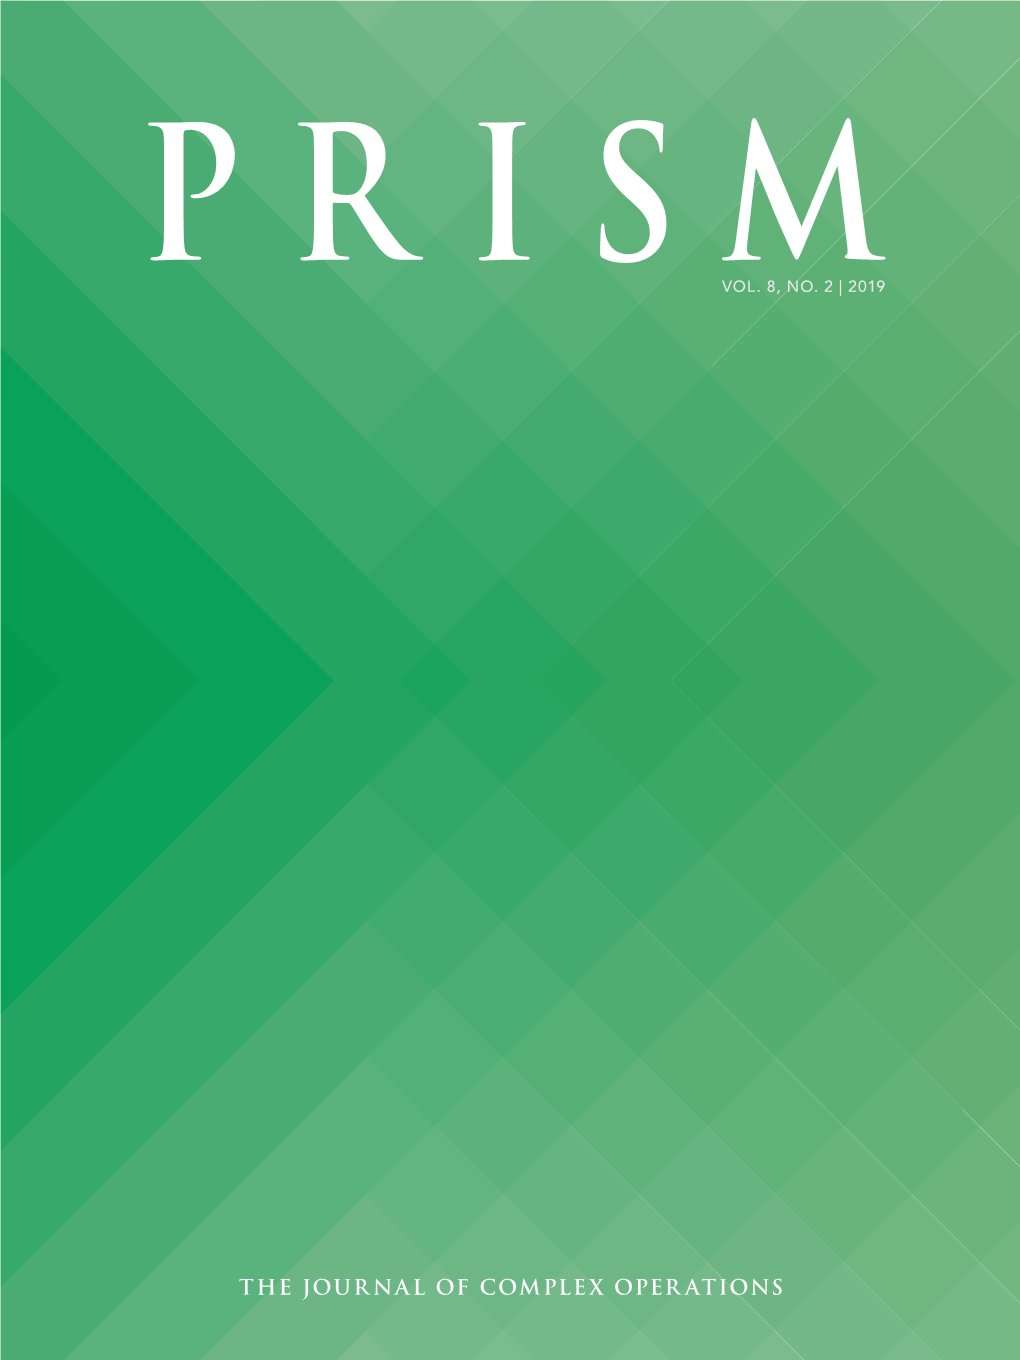 Prism Vol. 8, No. 2 Prism About Vol